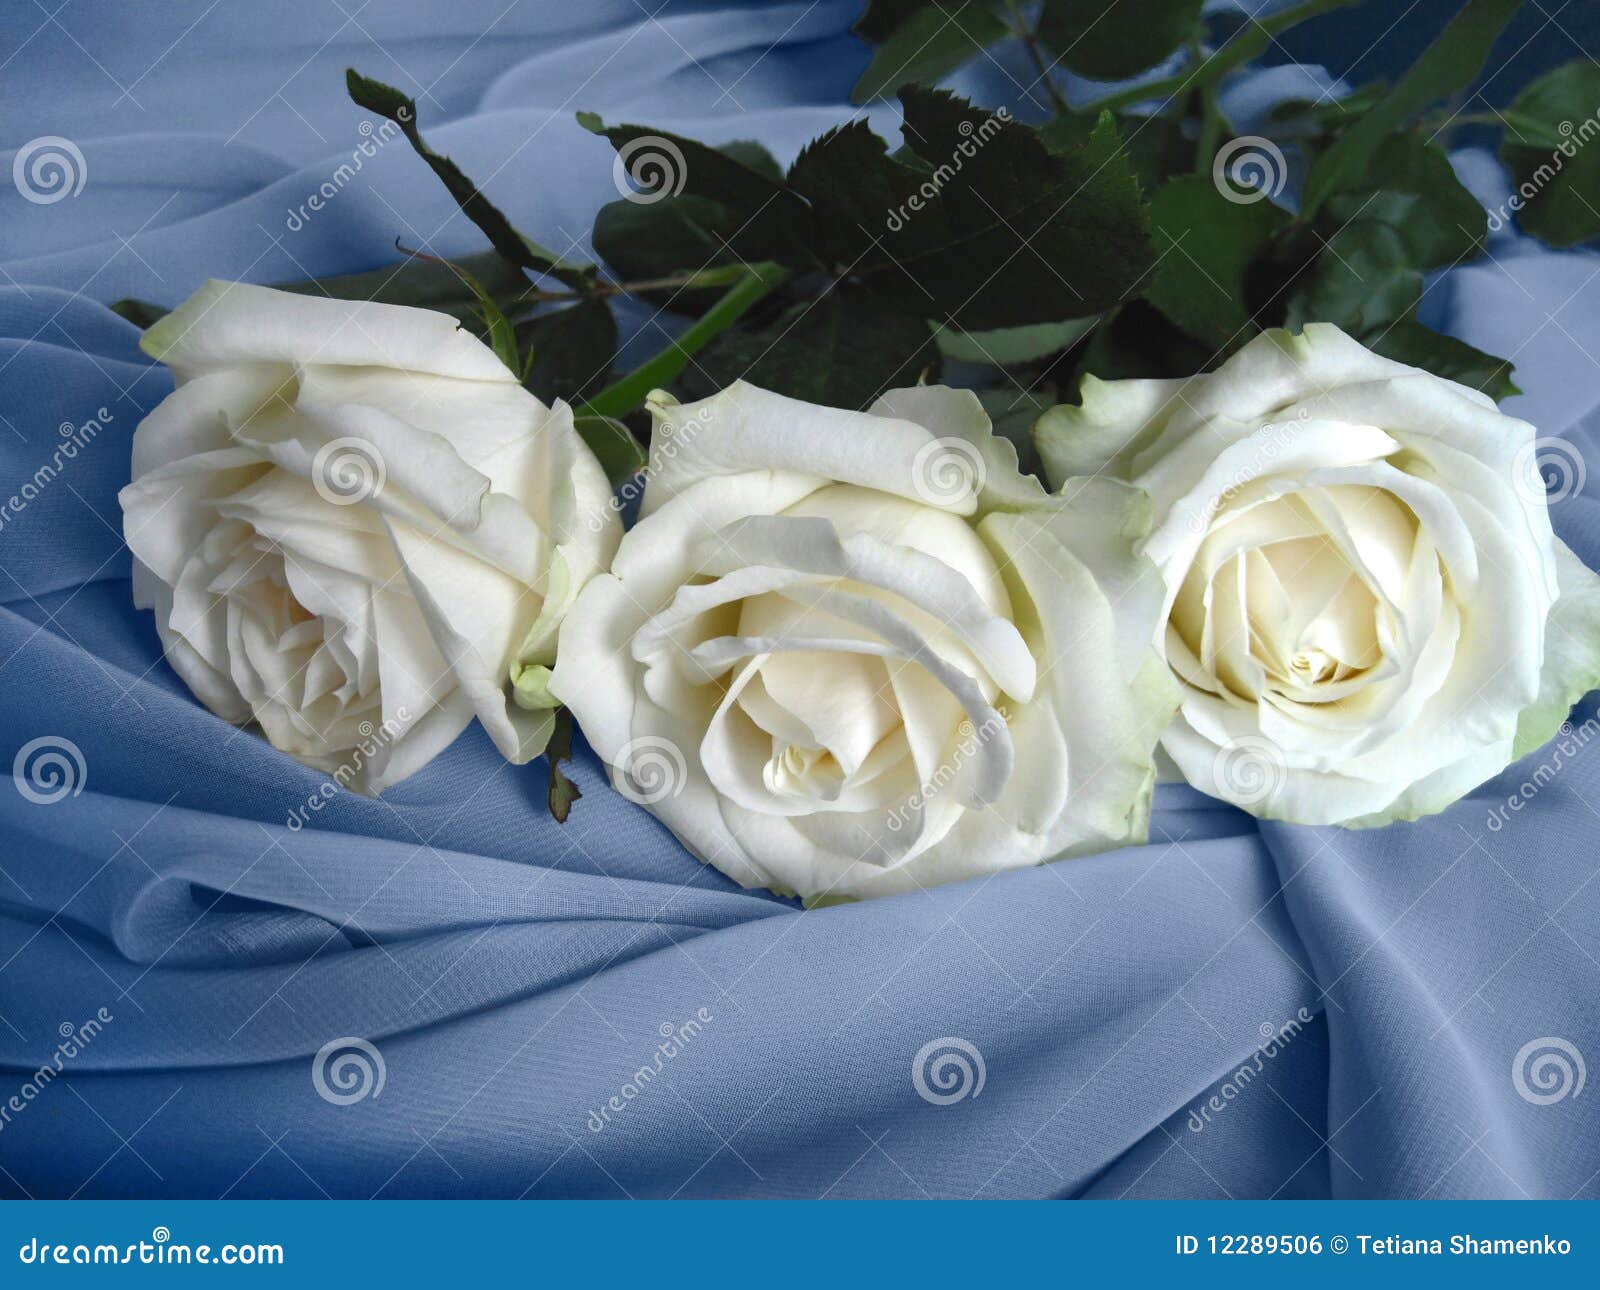 Three white roses stock photo. Image of background, ornate - 12289506